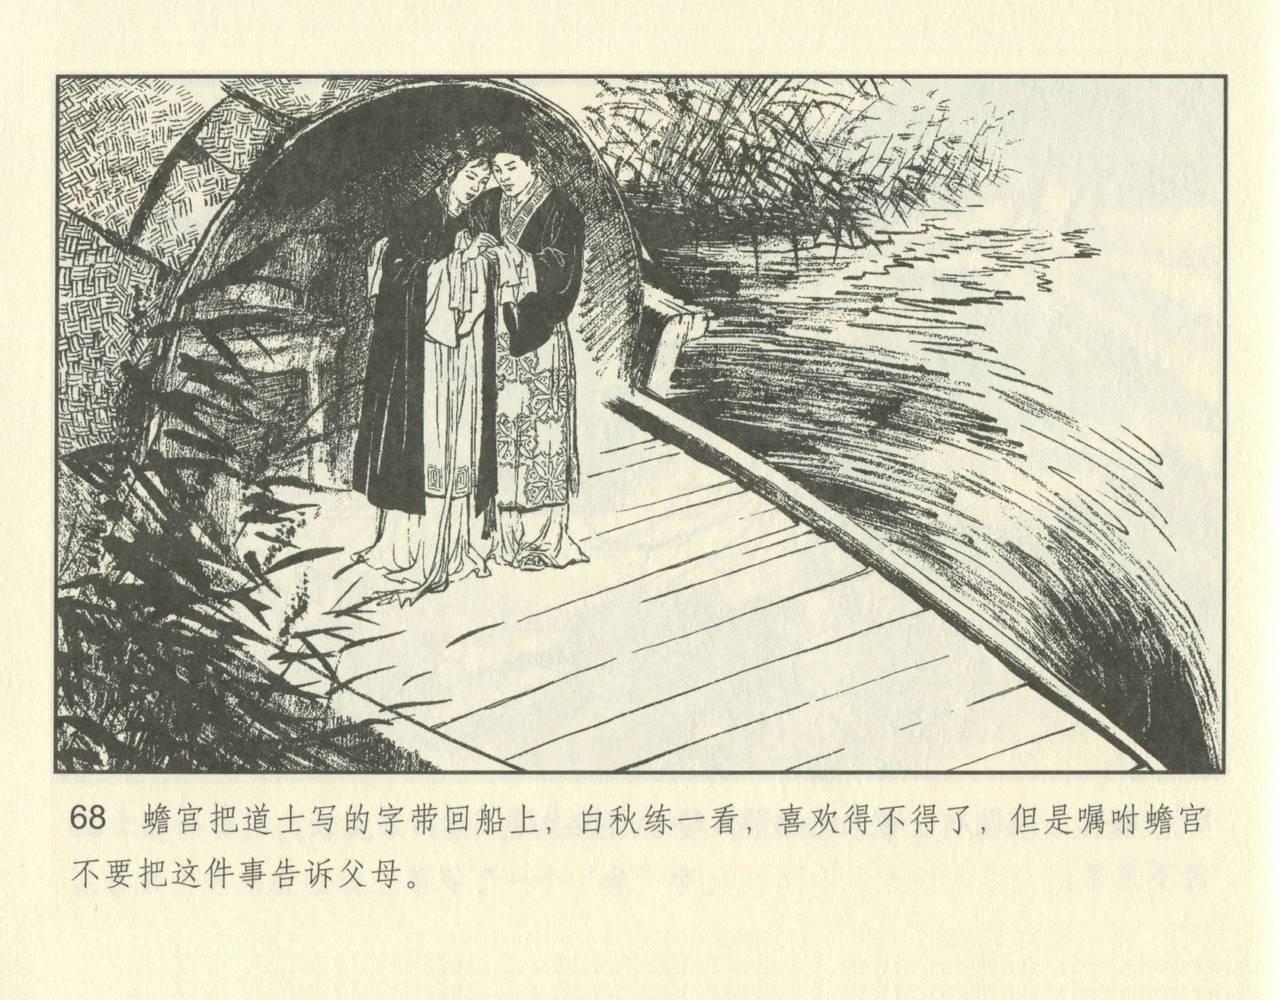 聊斋志异 张玮等绘 天津人民美术出版社 卷二十一 ~ 三十 117